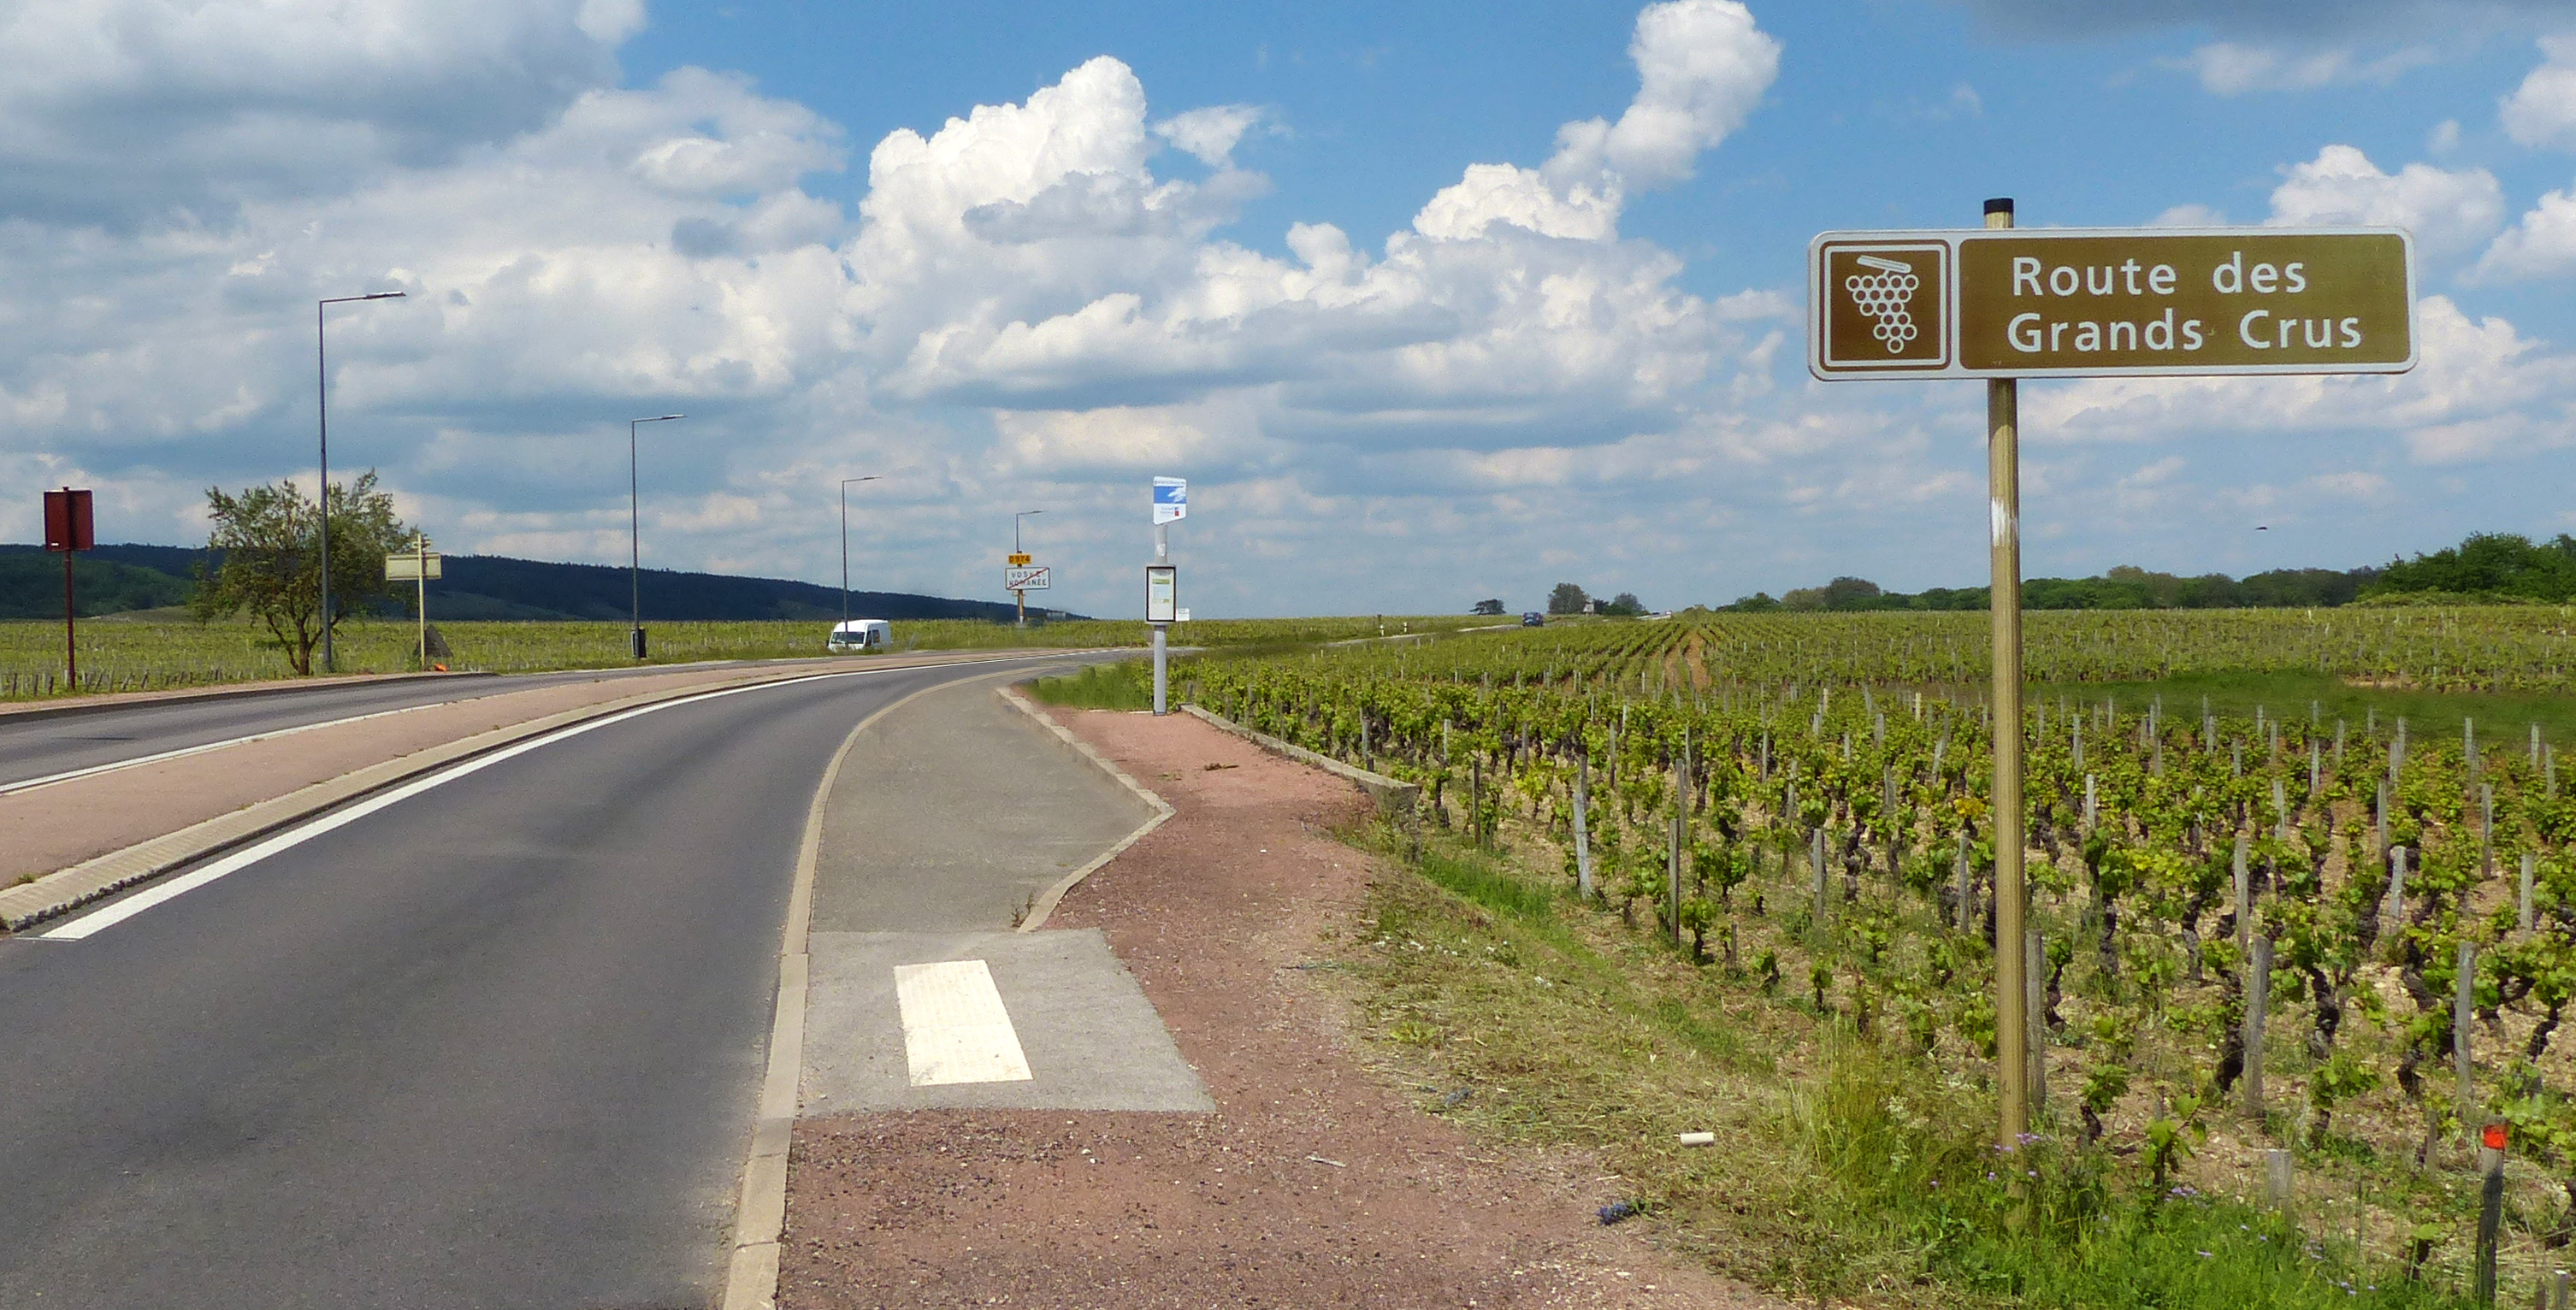 File:Panneau Route des Grands Crus Vosne-Romanée.jpg - Wikimedia Commons